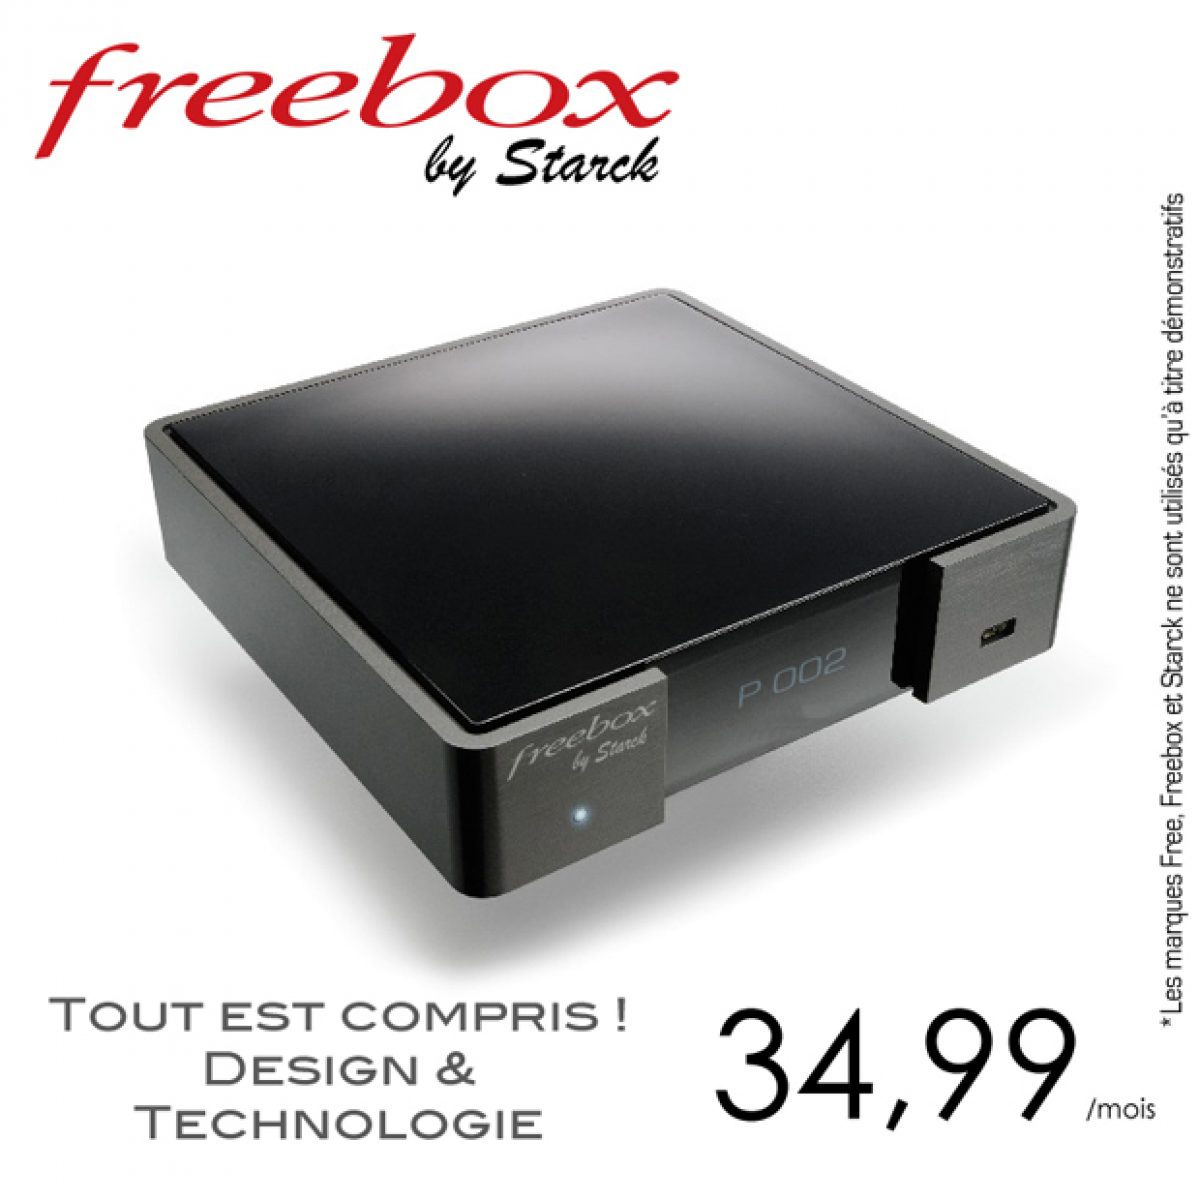 Freebox by Starck: Tout est compris, design et technologie